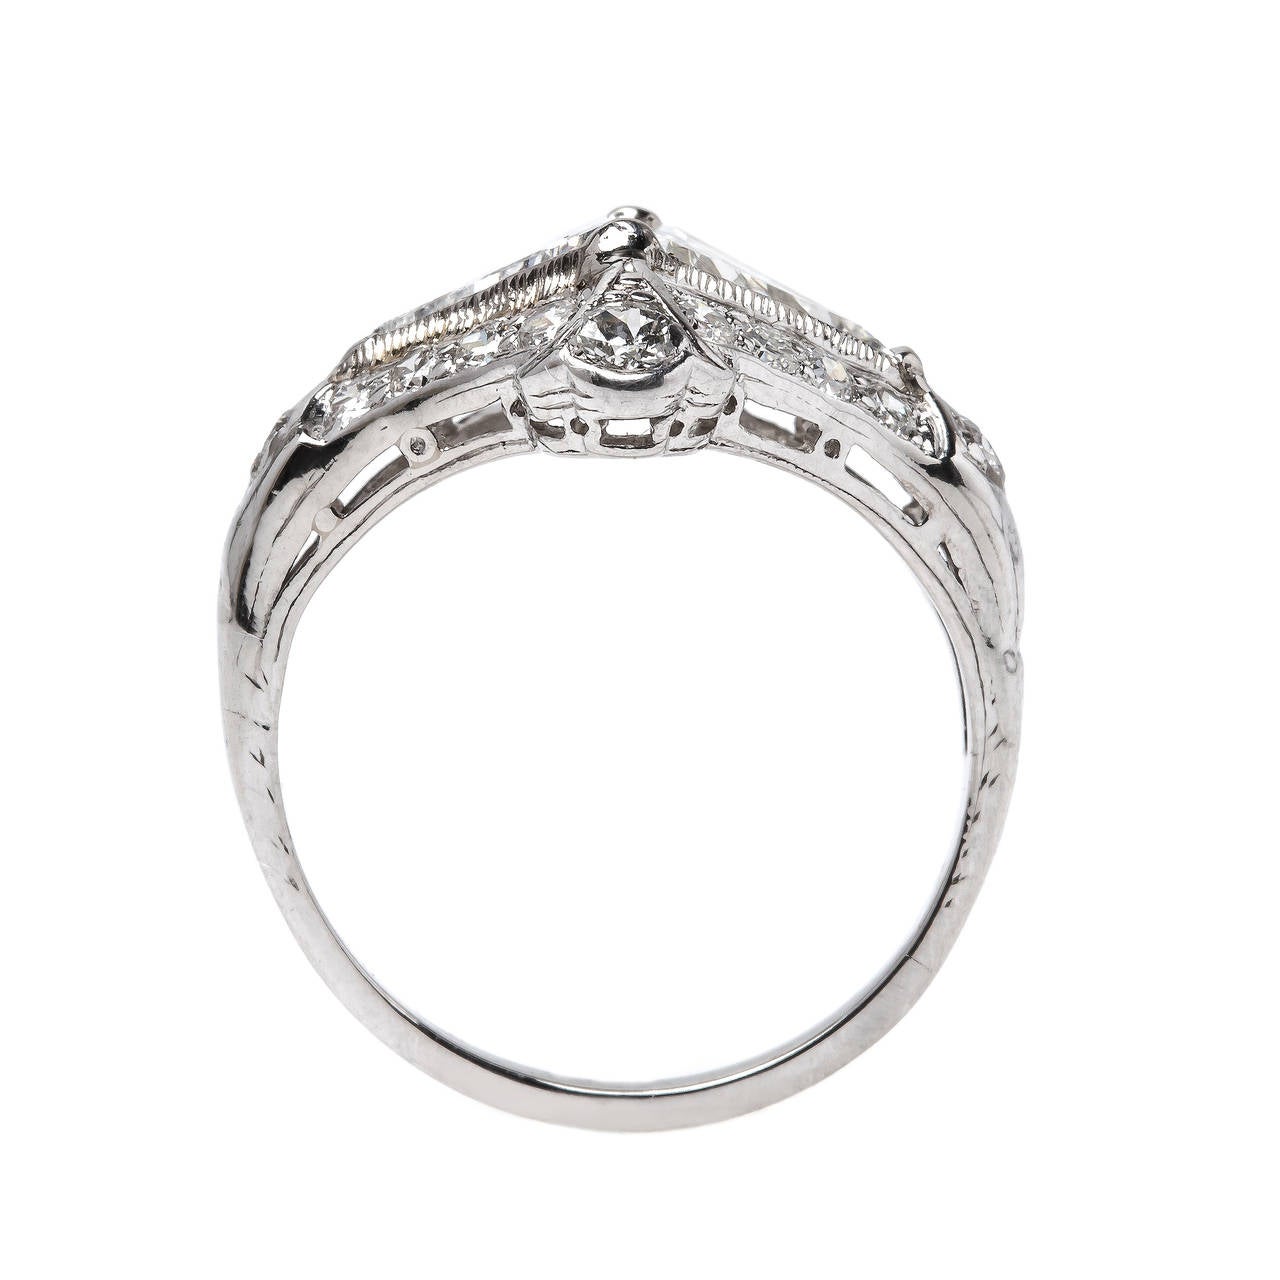 Unique Art Deco Platinum Engagement Ring with Triangular Cut Diamonds ...